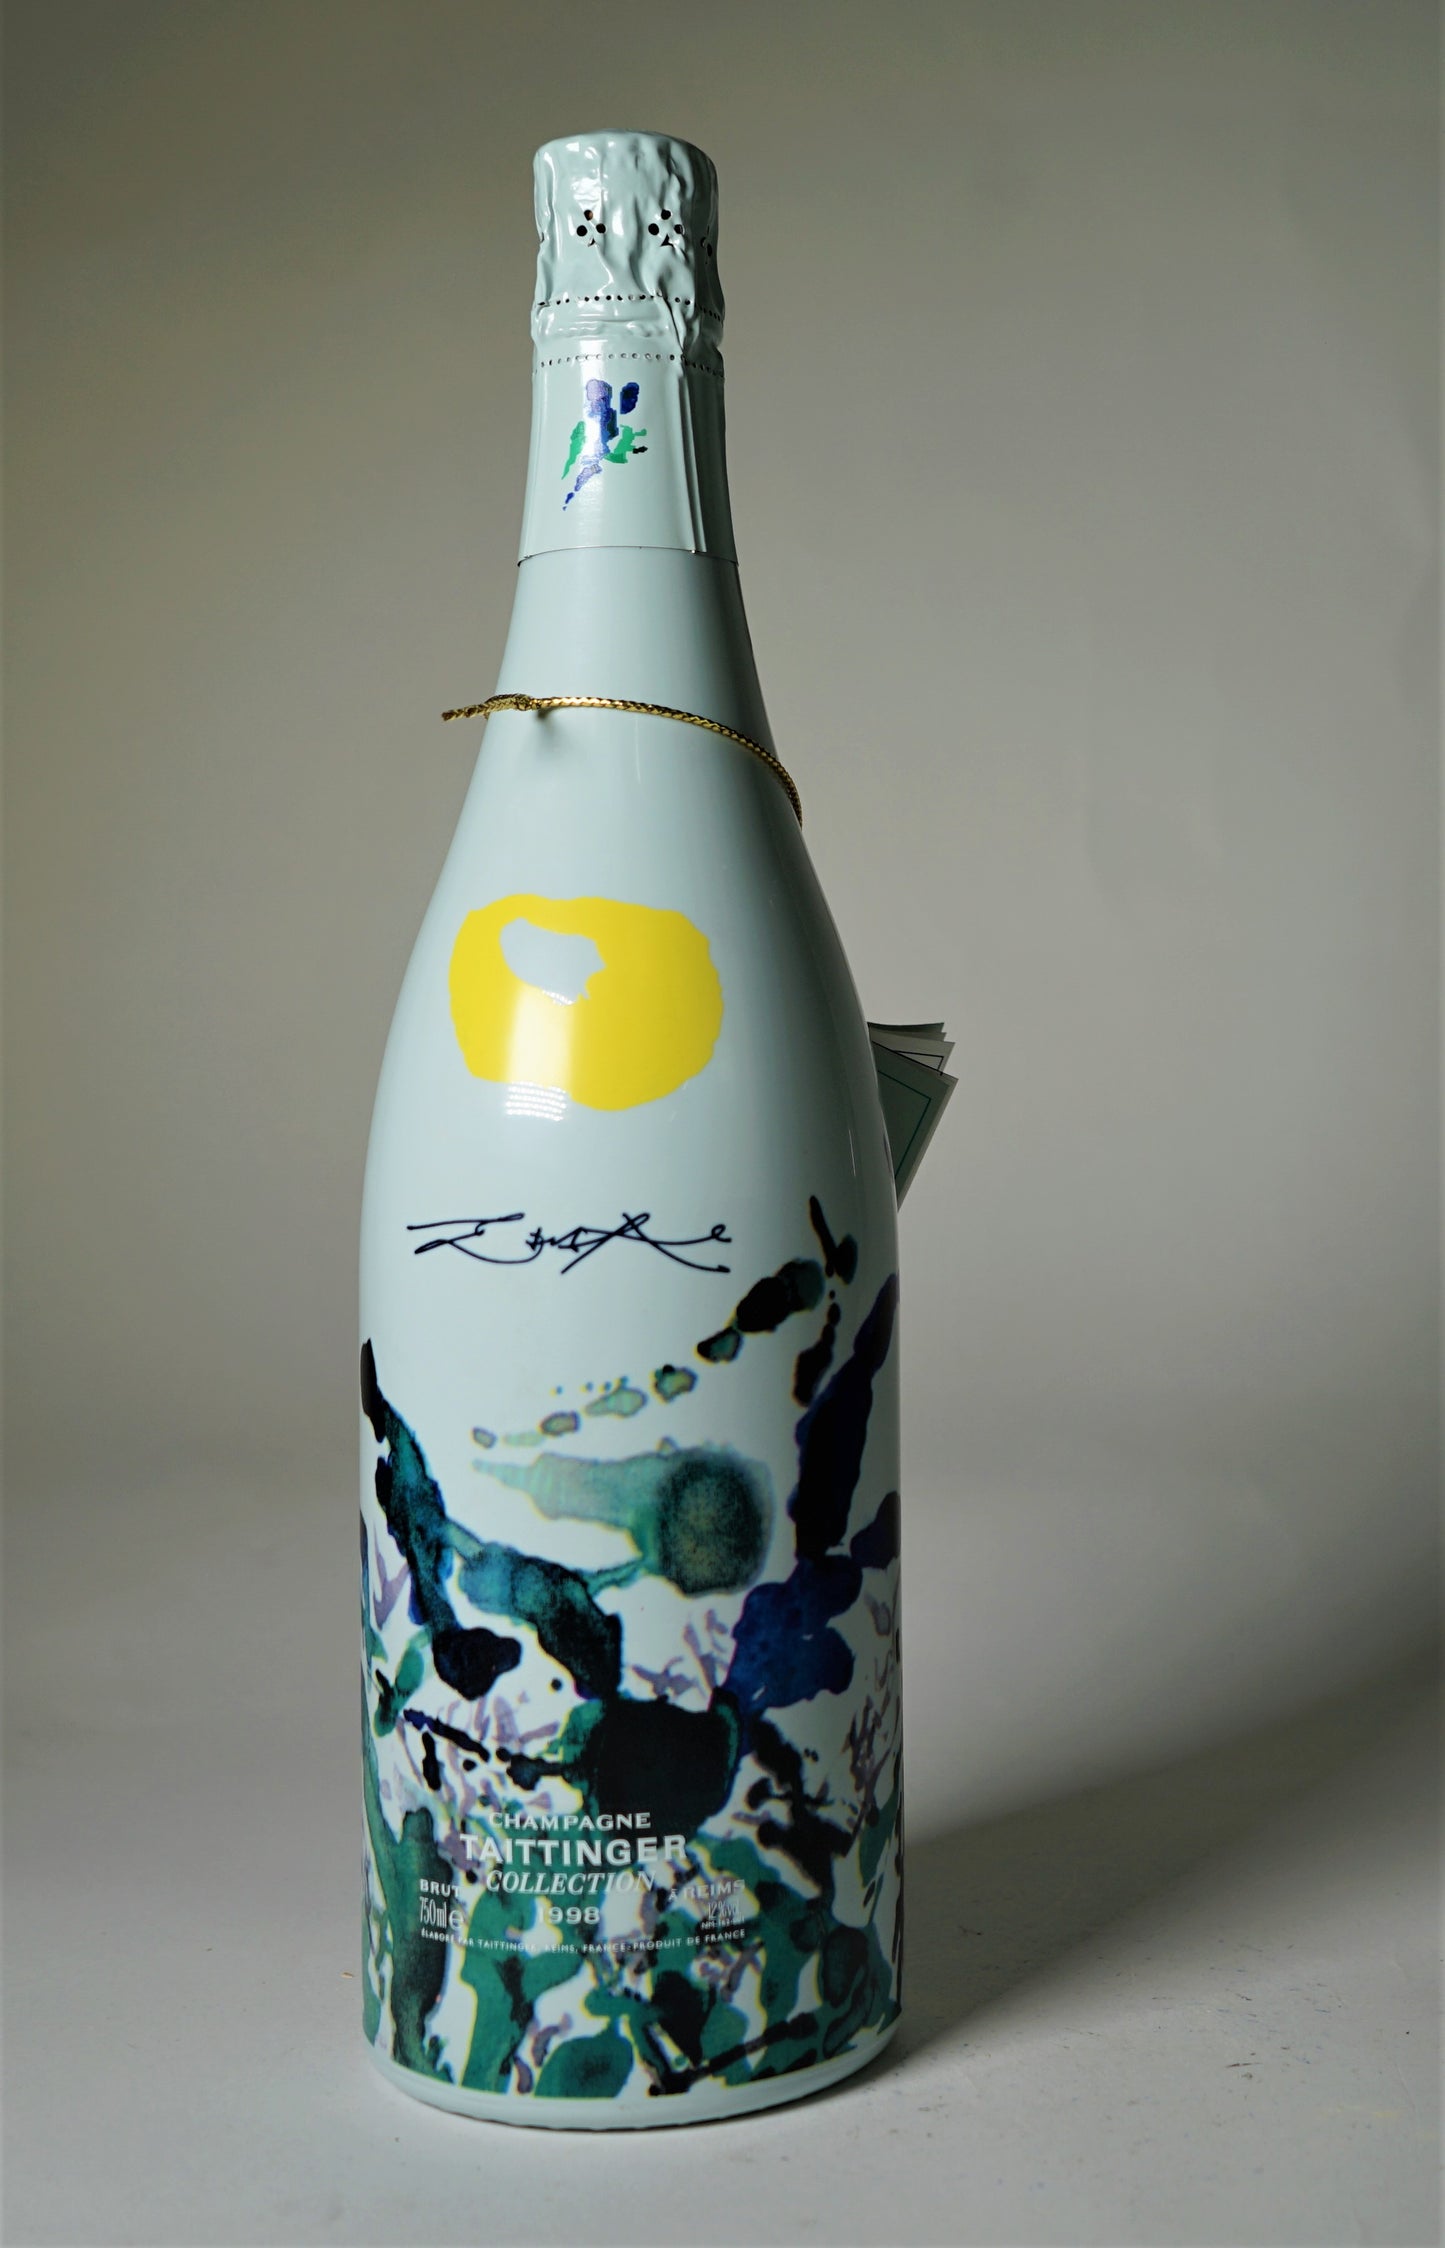 シャンパーニュ テタンジェ・コレクション   ザオウーキー[1998] Champagne Taittinger Collection Zao Wou Ki